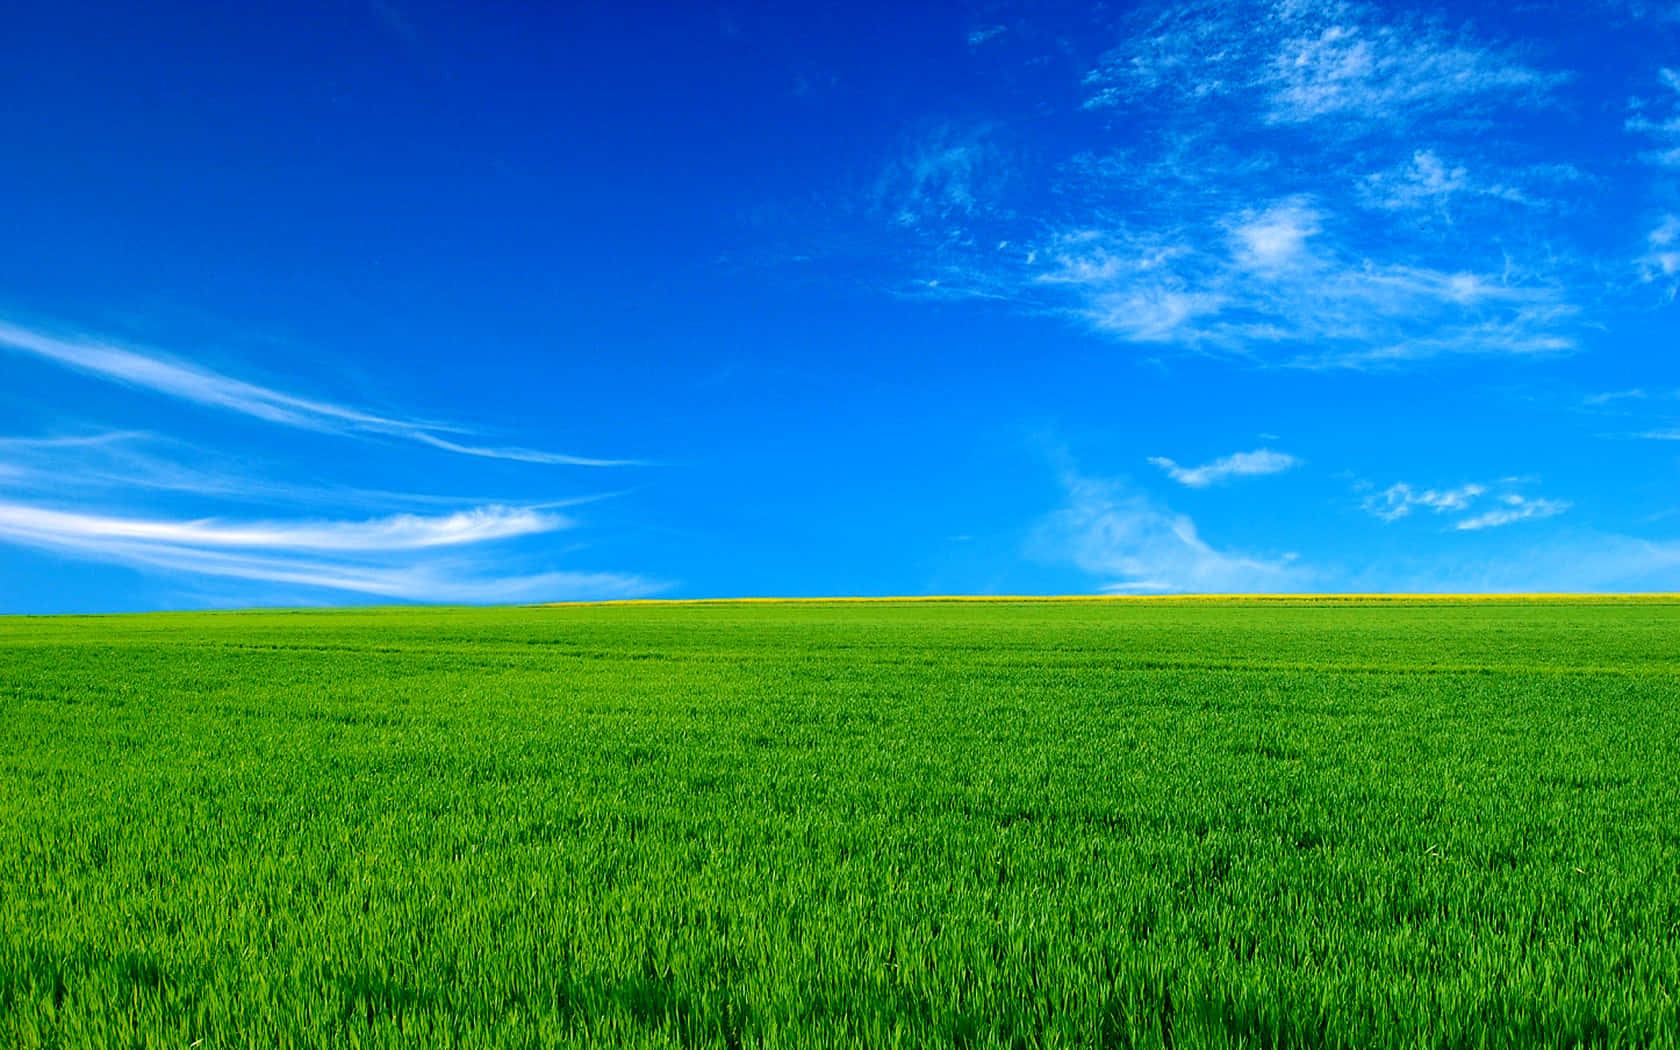 Vibrant_ Green_ Field_ Under_ Blue_ Sky Wallpaper